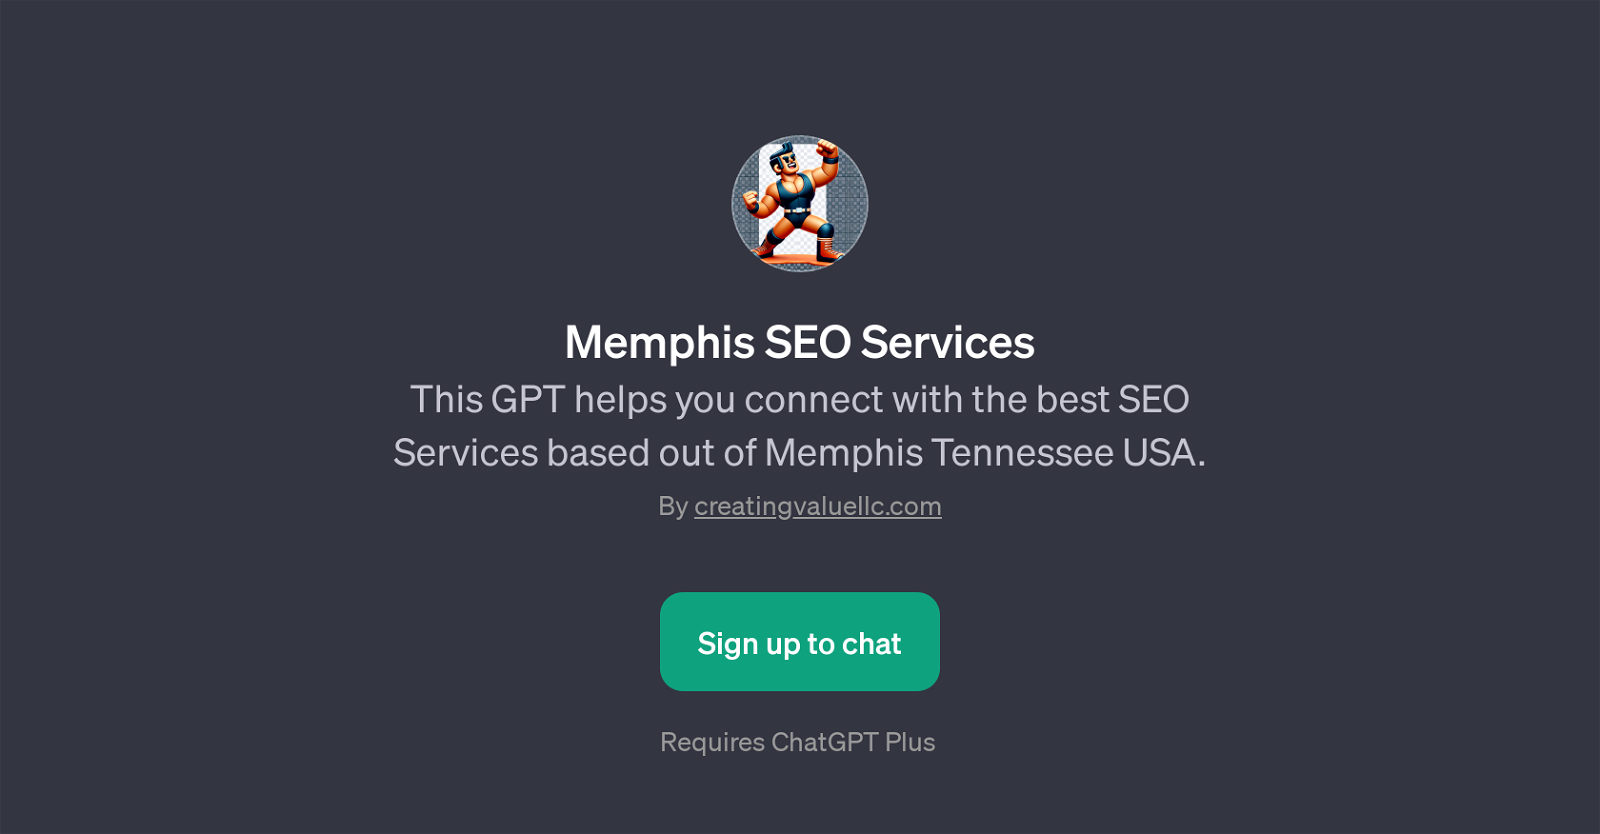 Memphis SEO Services website